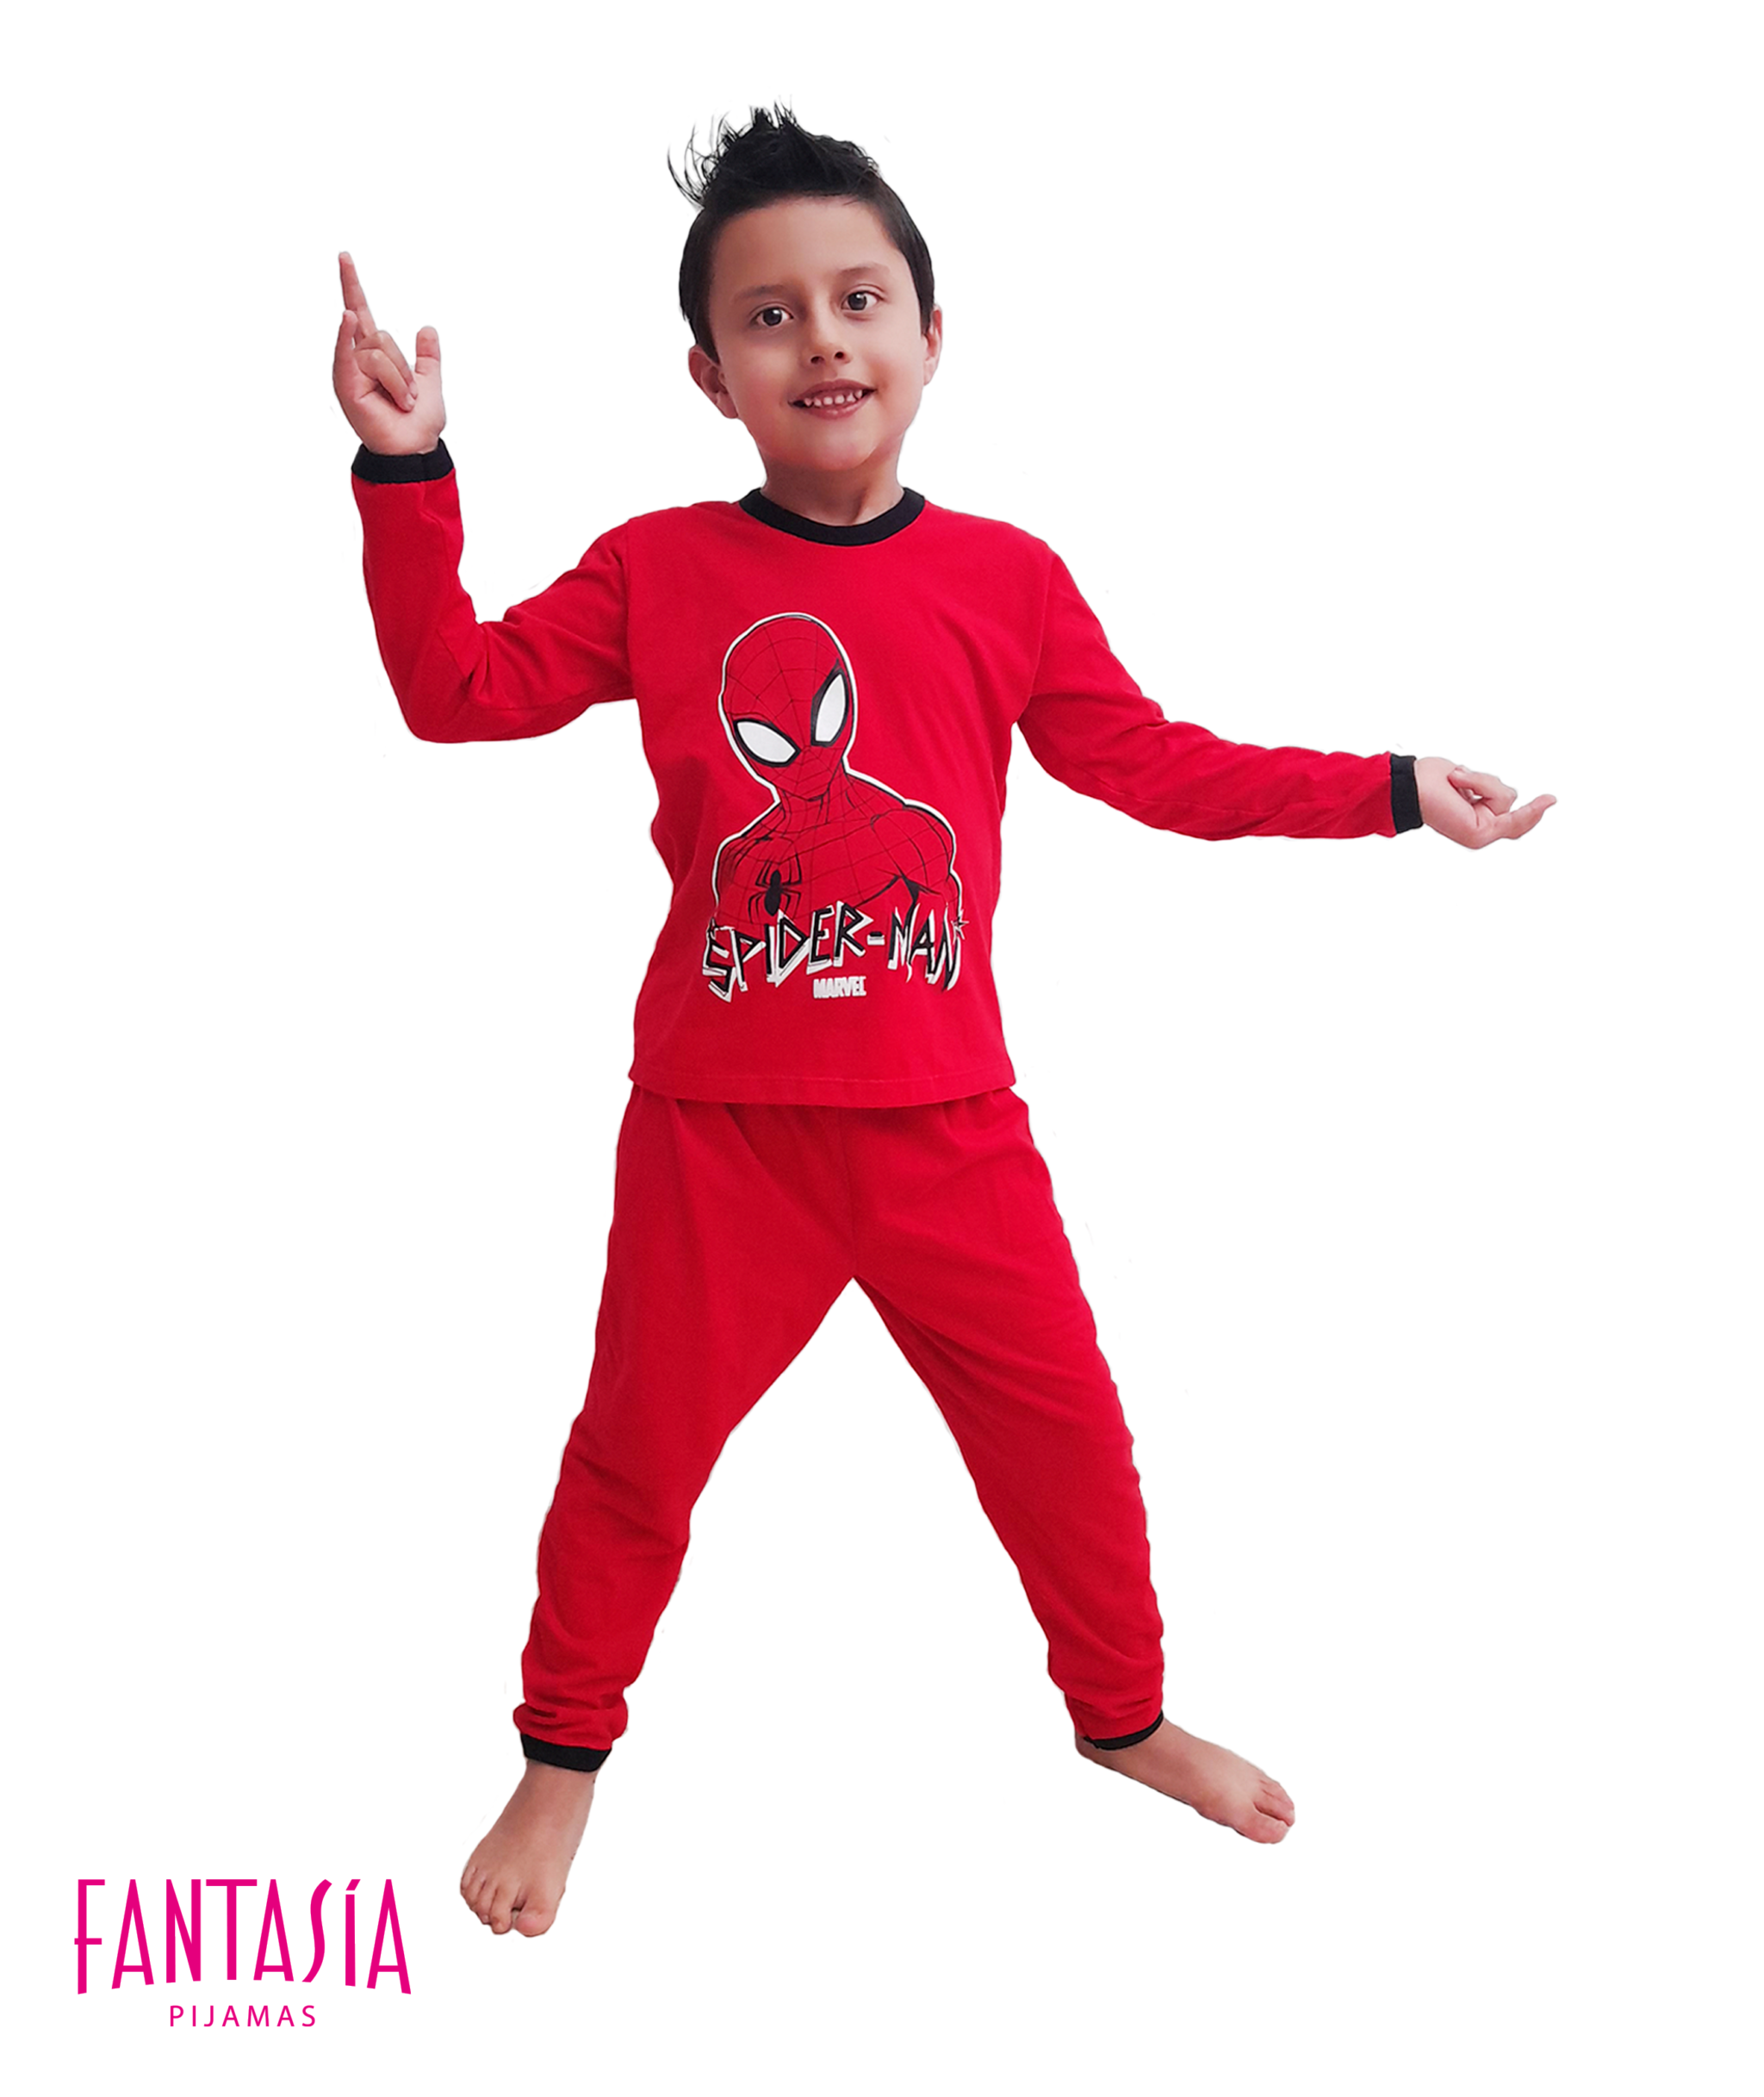 Pijama de Spider-Man roja de pantalón largo para niño - Ponemos la Fantasía!